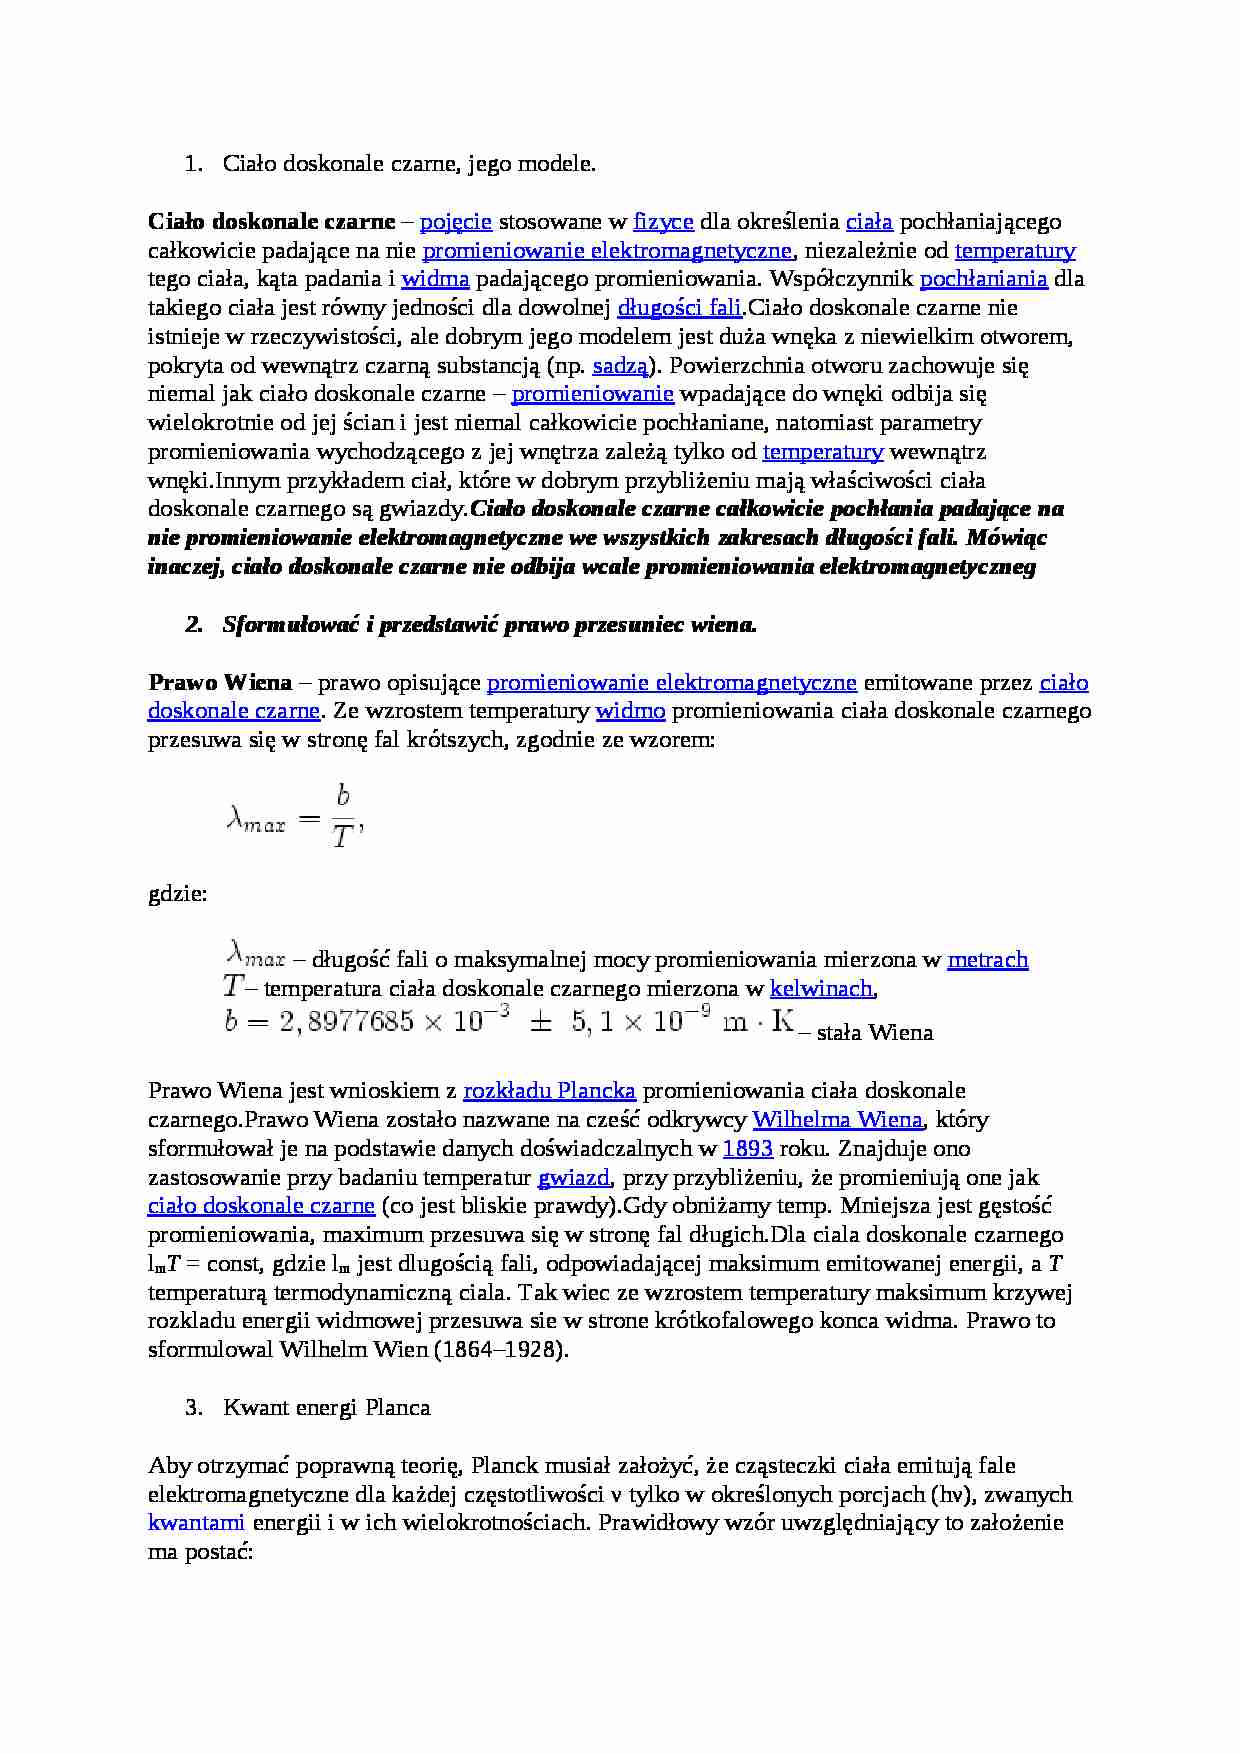 Zagadnienia z fizyki współczesnej-opracowane odpowiedzi do pytań z egzaminu - strona 1